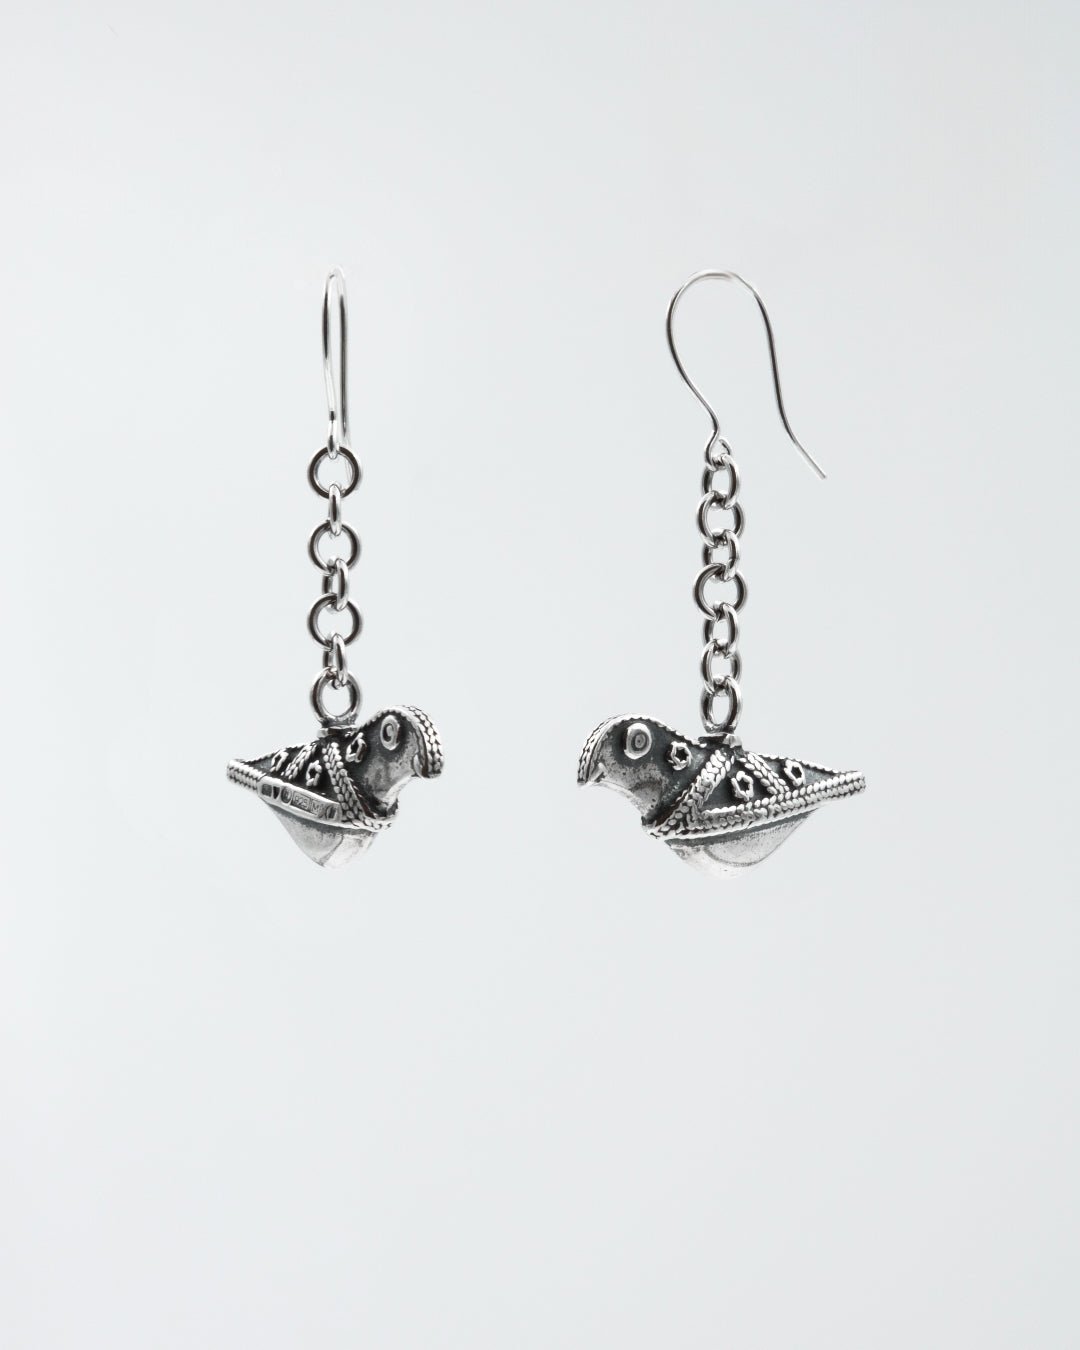 Kept Hattula's bird earrings silver